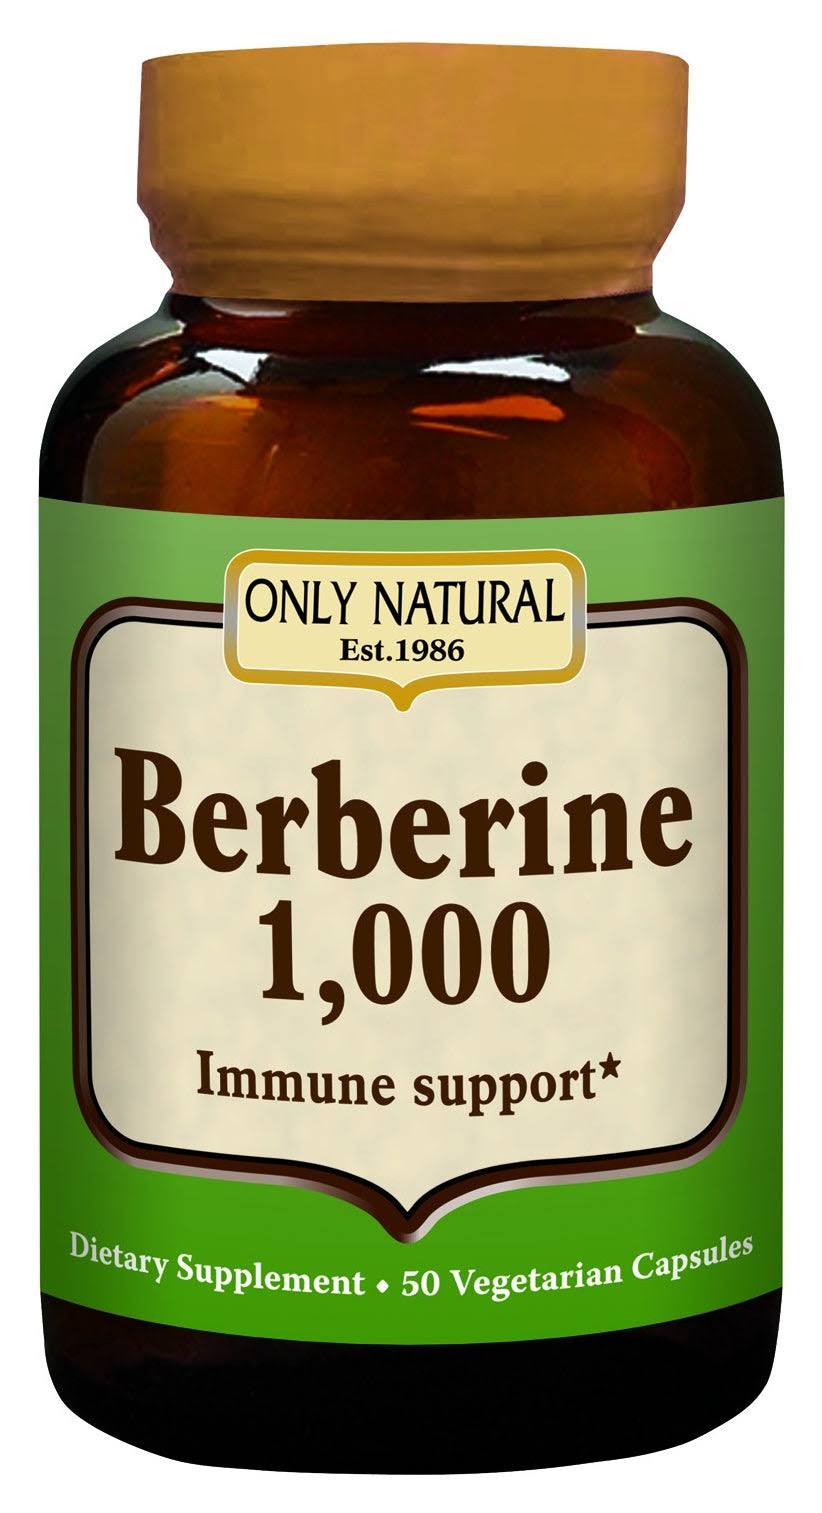 Only Natural Berberine 1000 Immune Support - 1000mg, 50 Vegetarian Capsules